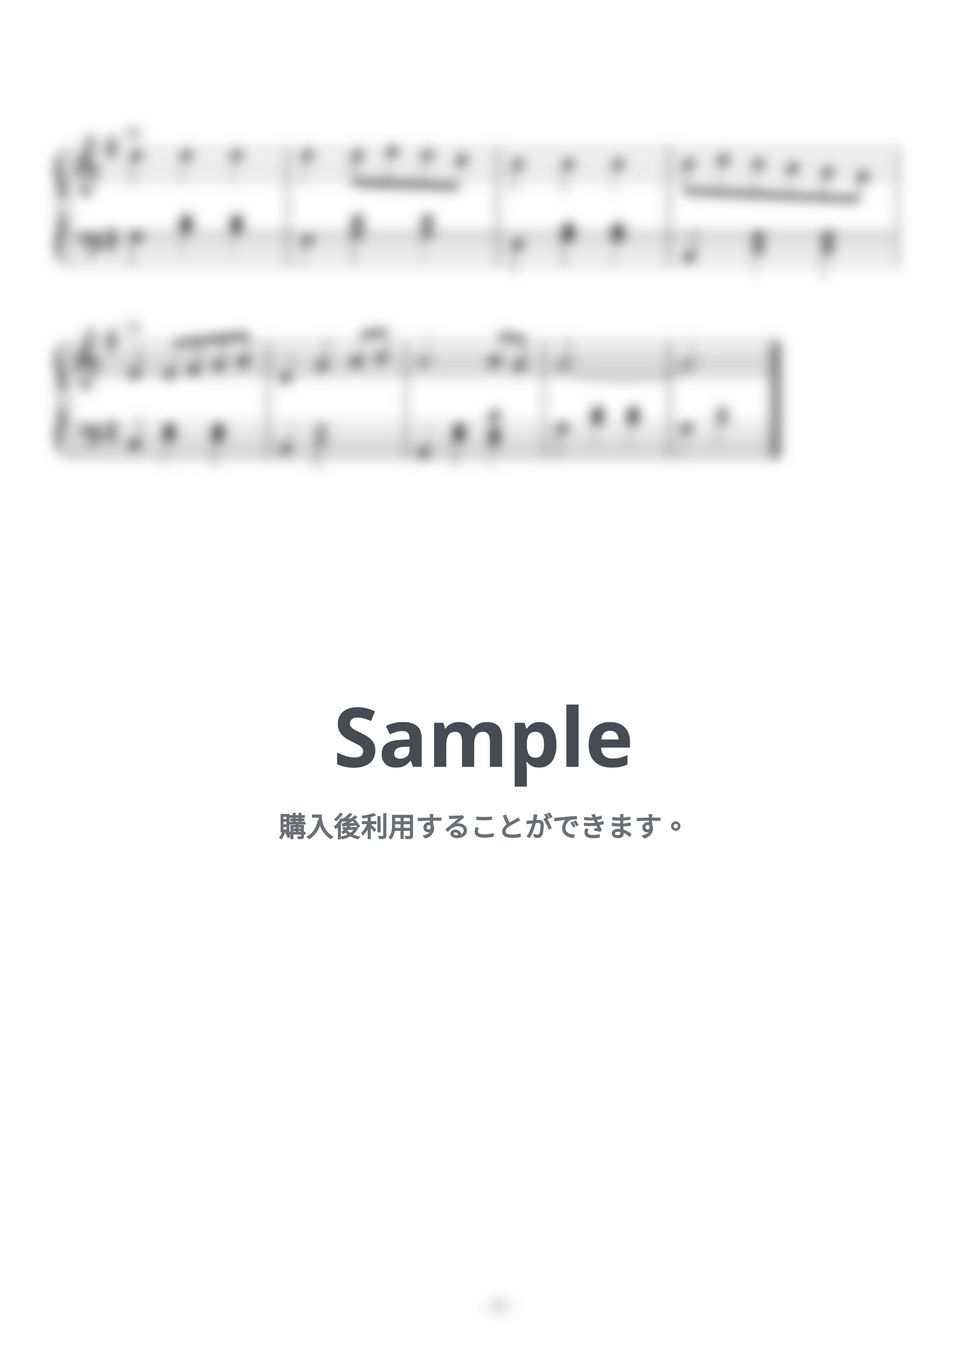 木村弓 - いつも何度でも (Fdur(original),Gdur,ヘ長調とト長調の二種類セットです。) by 久道悟美